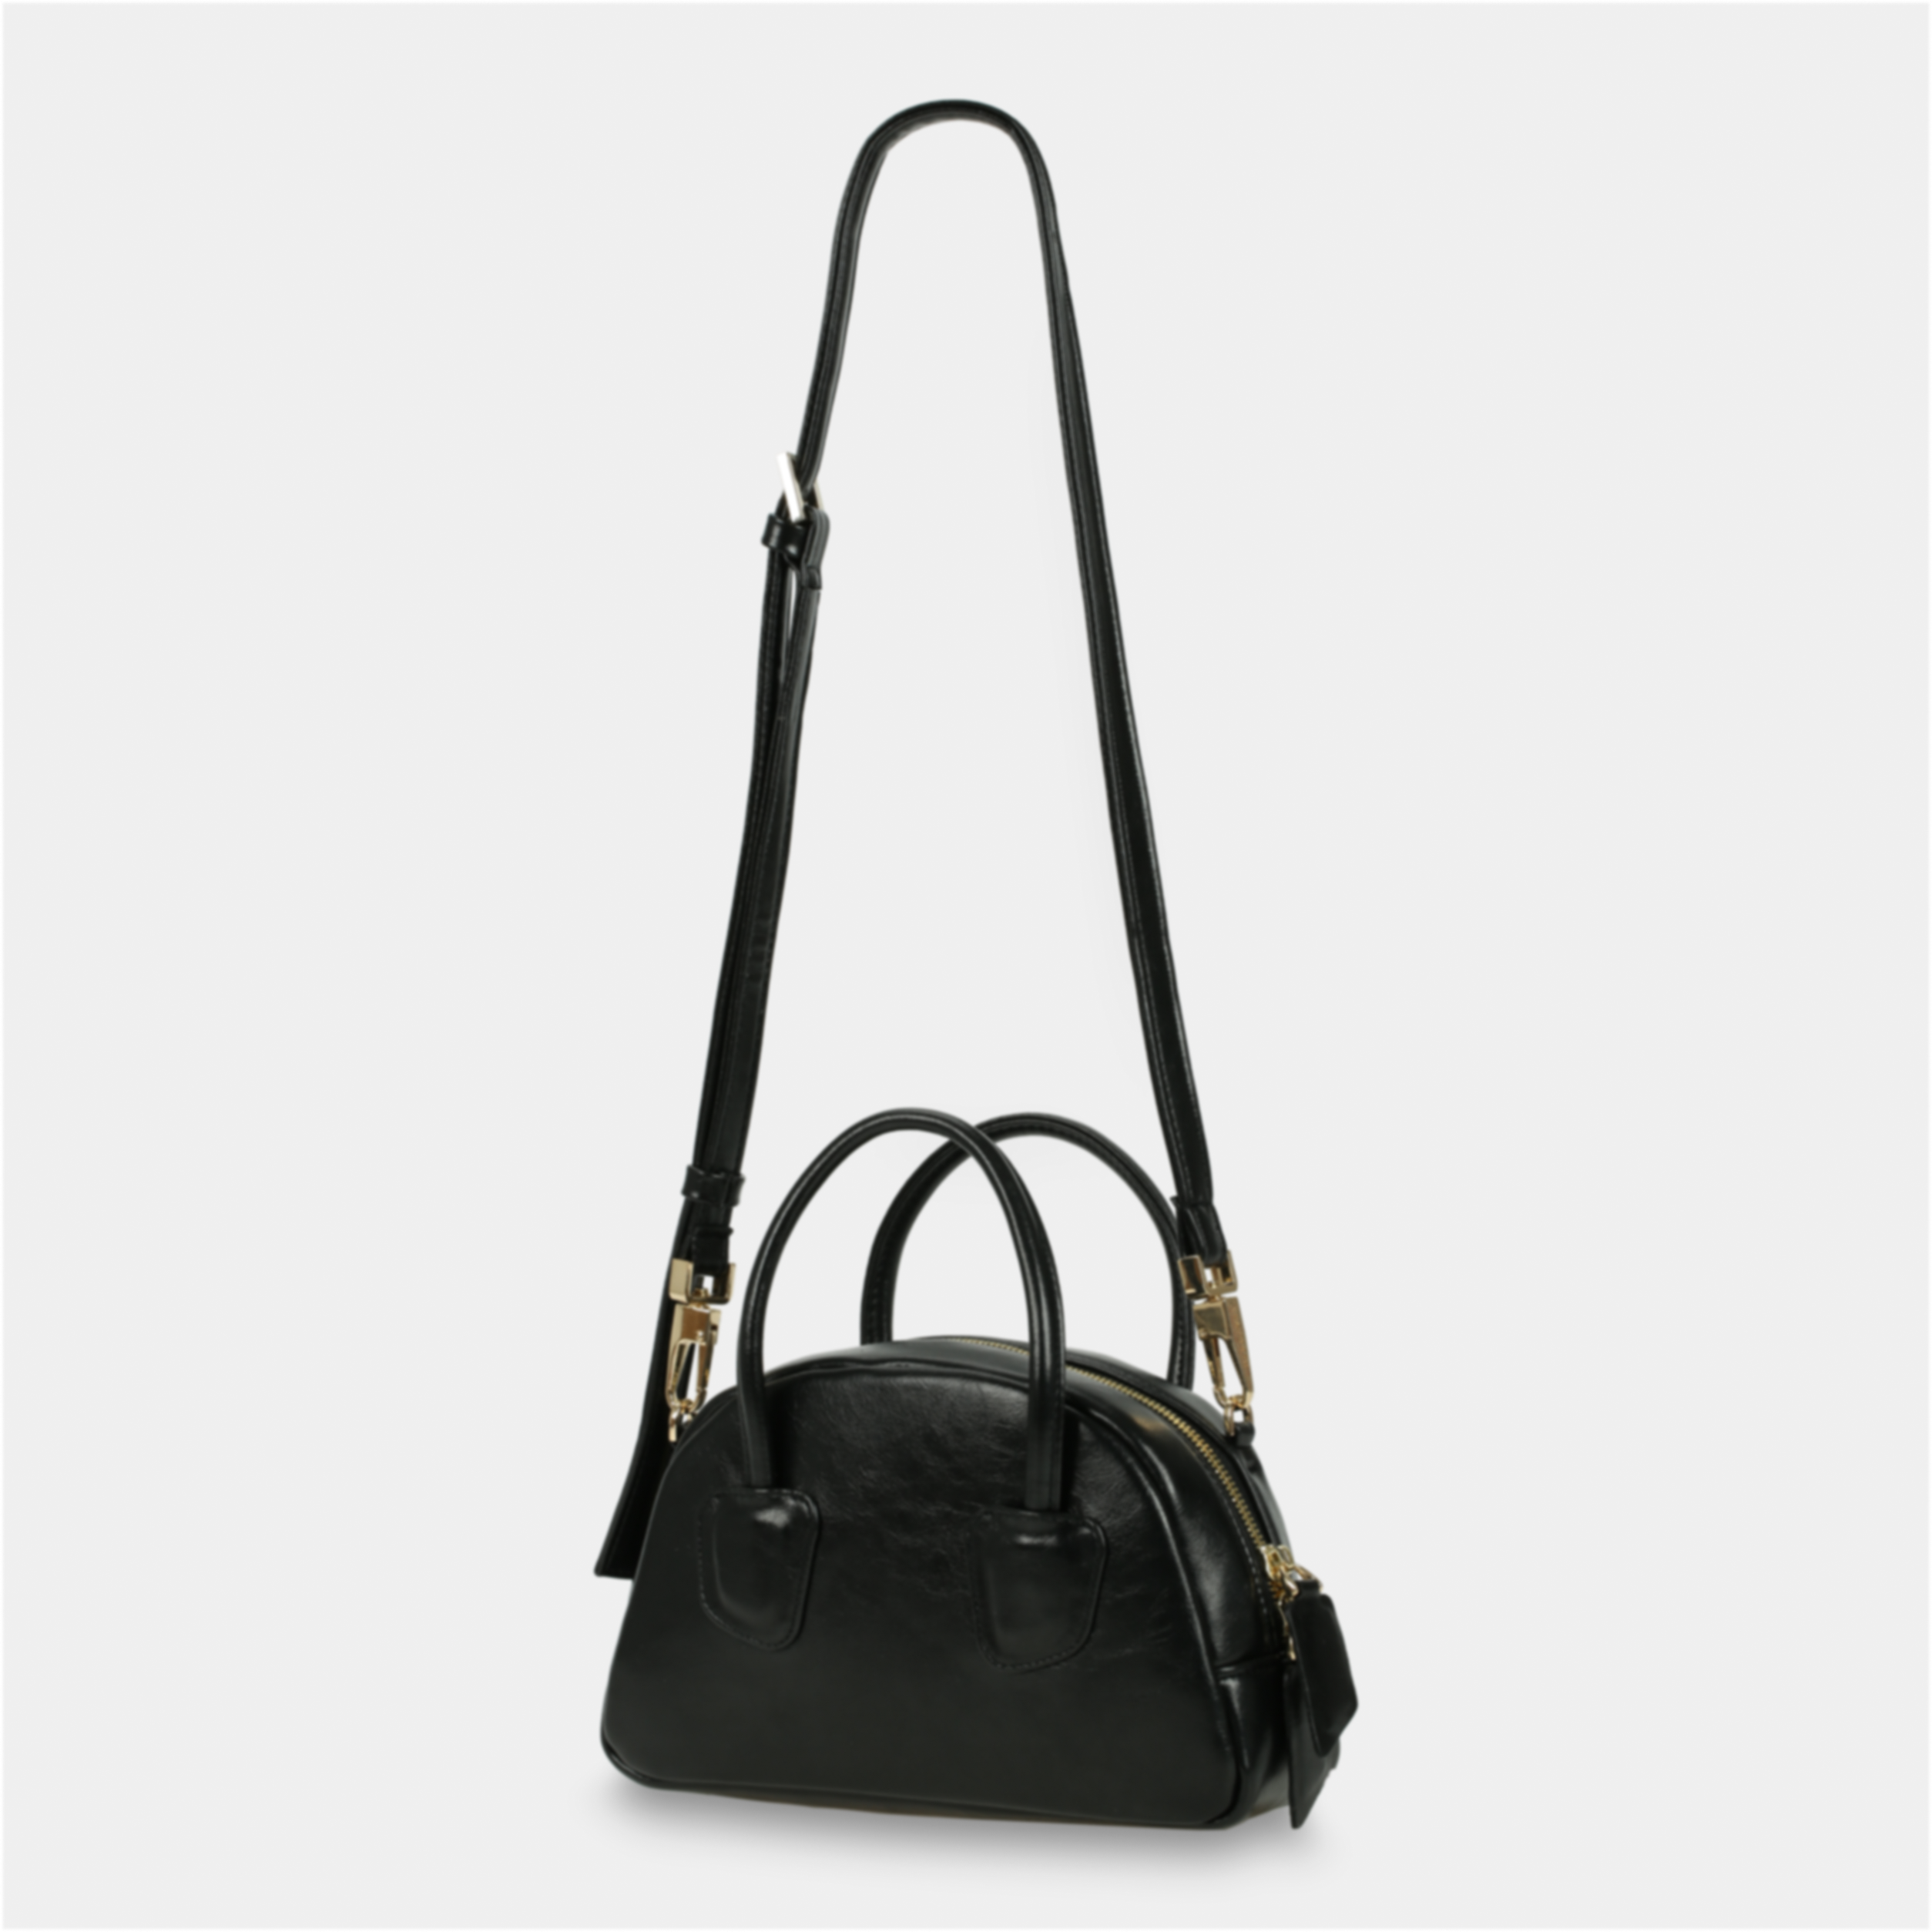 TACOS Handbag in Black color large size (M)